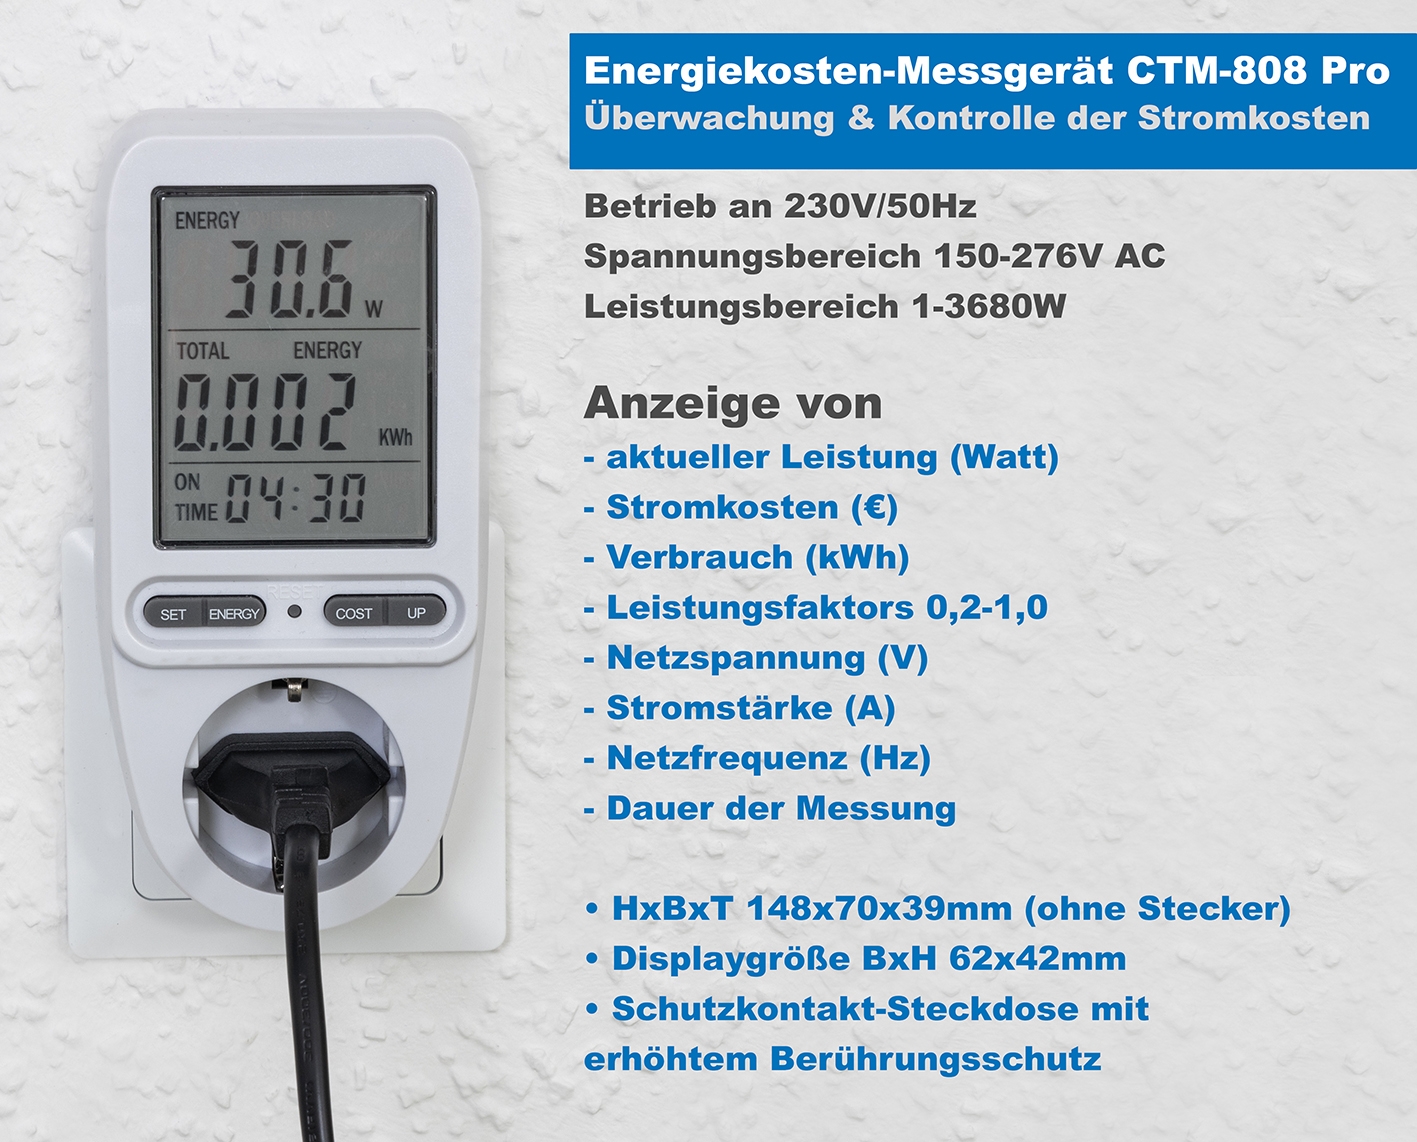 Energiekosten-Messgerät "CTM-808 Pro" LC-Display - Bild 2